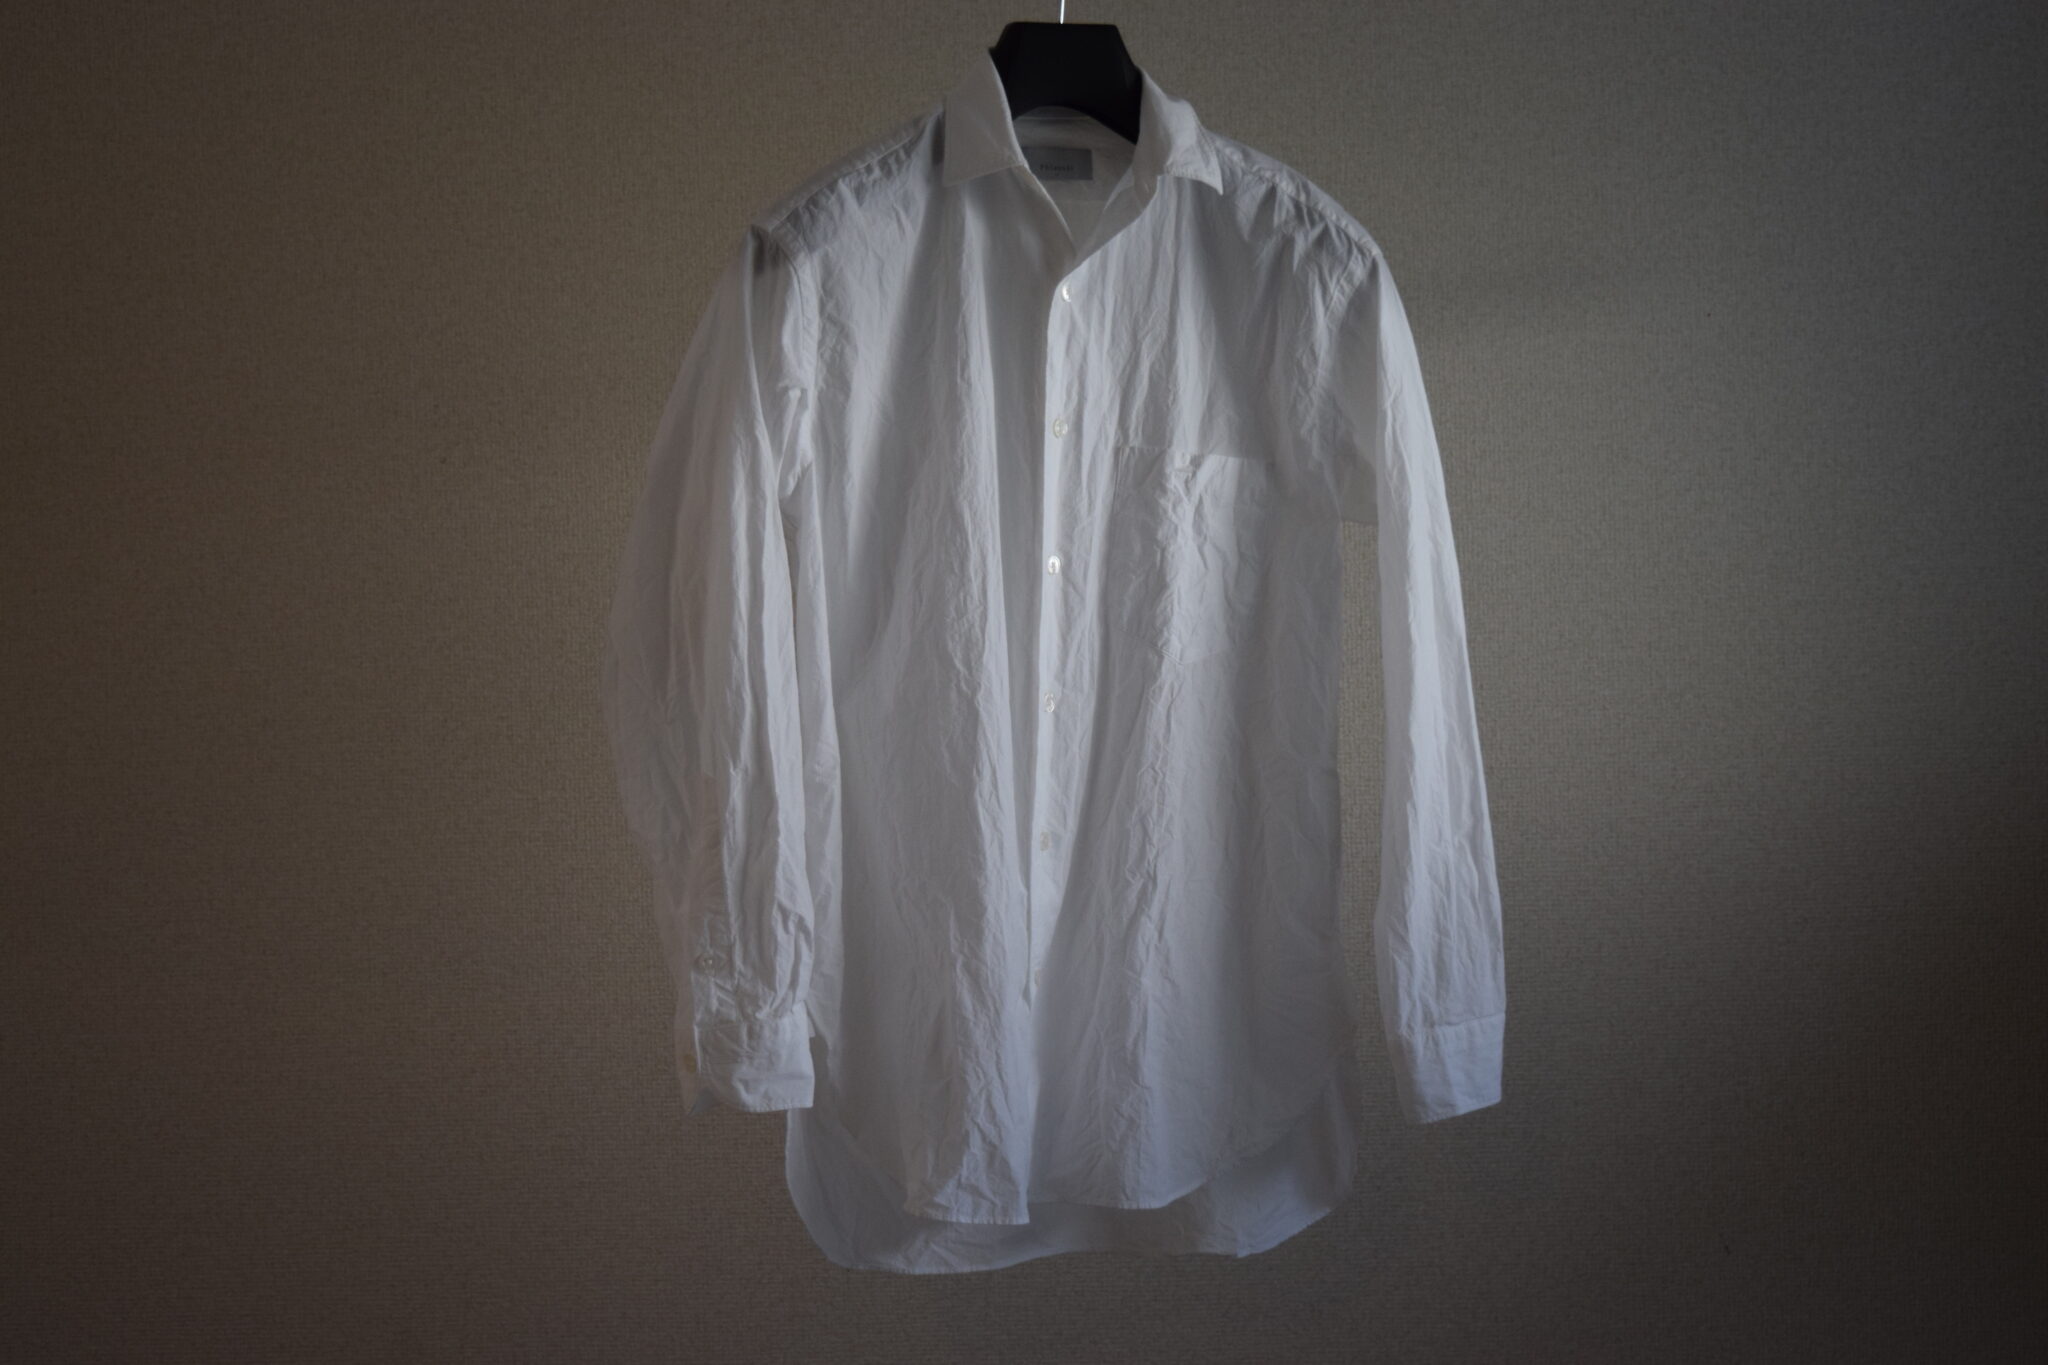 Phlannel(フランネル)の白シャツ | シャツと休む